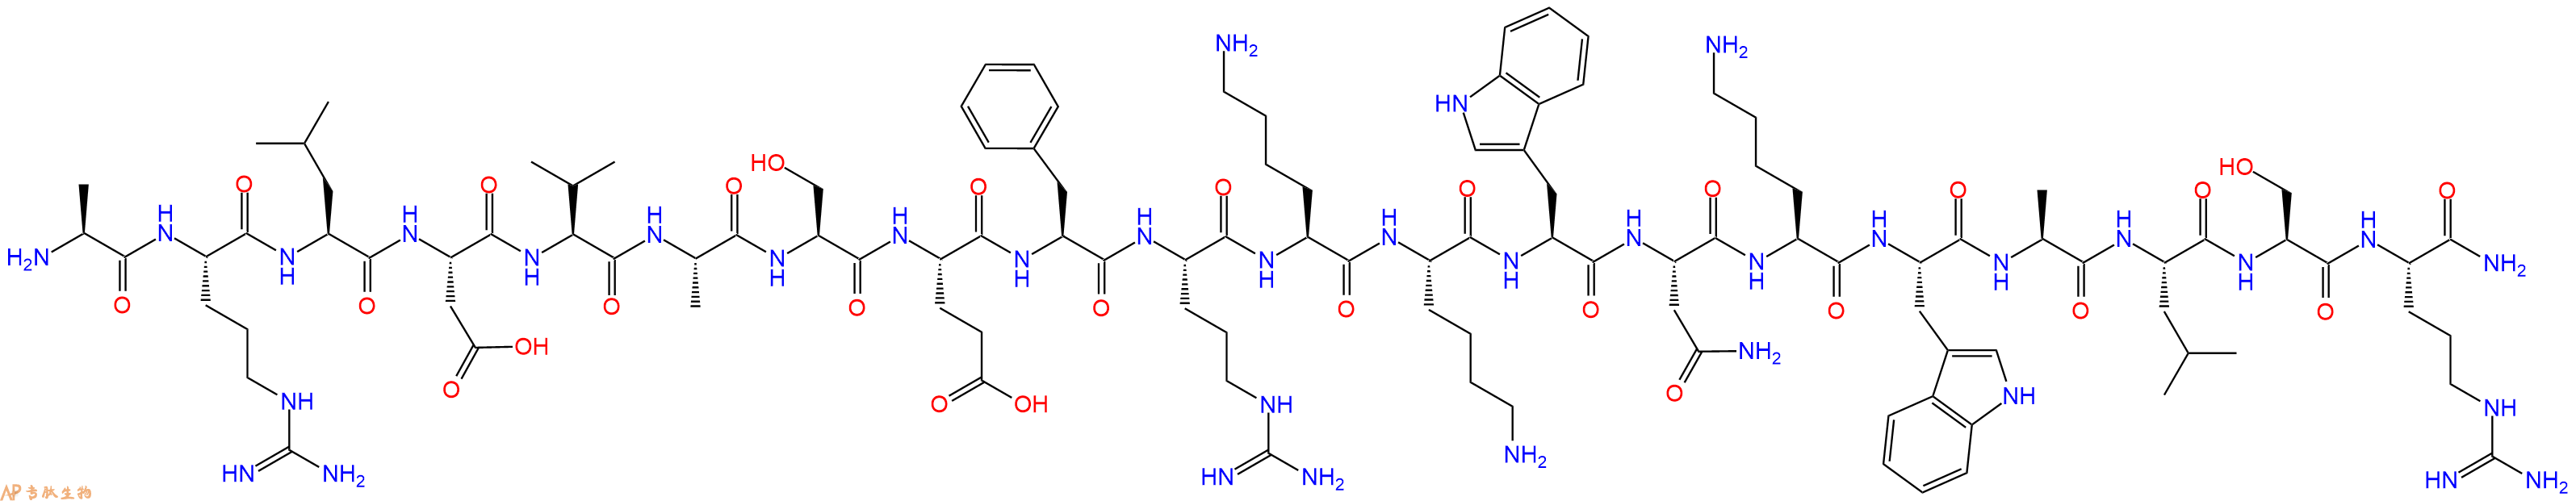 专肽生物产品肾上腺髓质素 Pro-Adrenomedullin(N-20), human150238-87-2